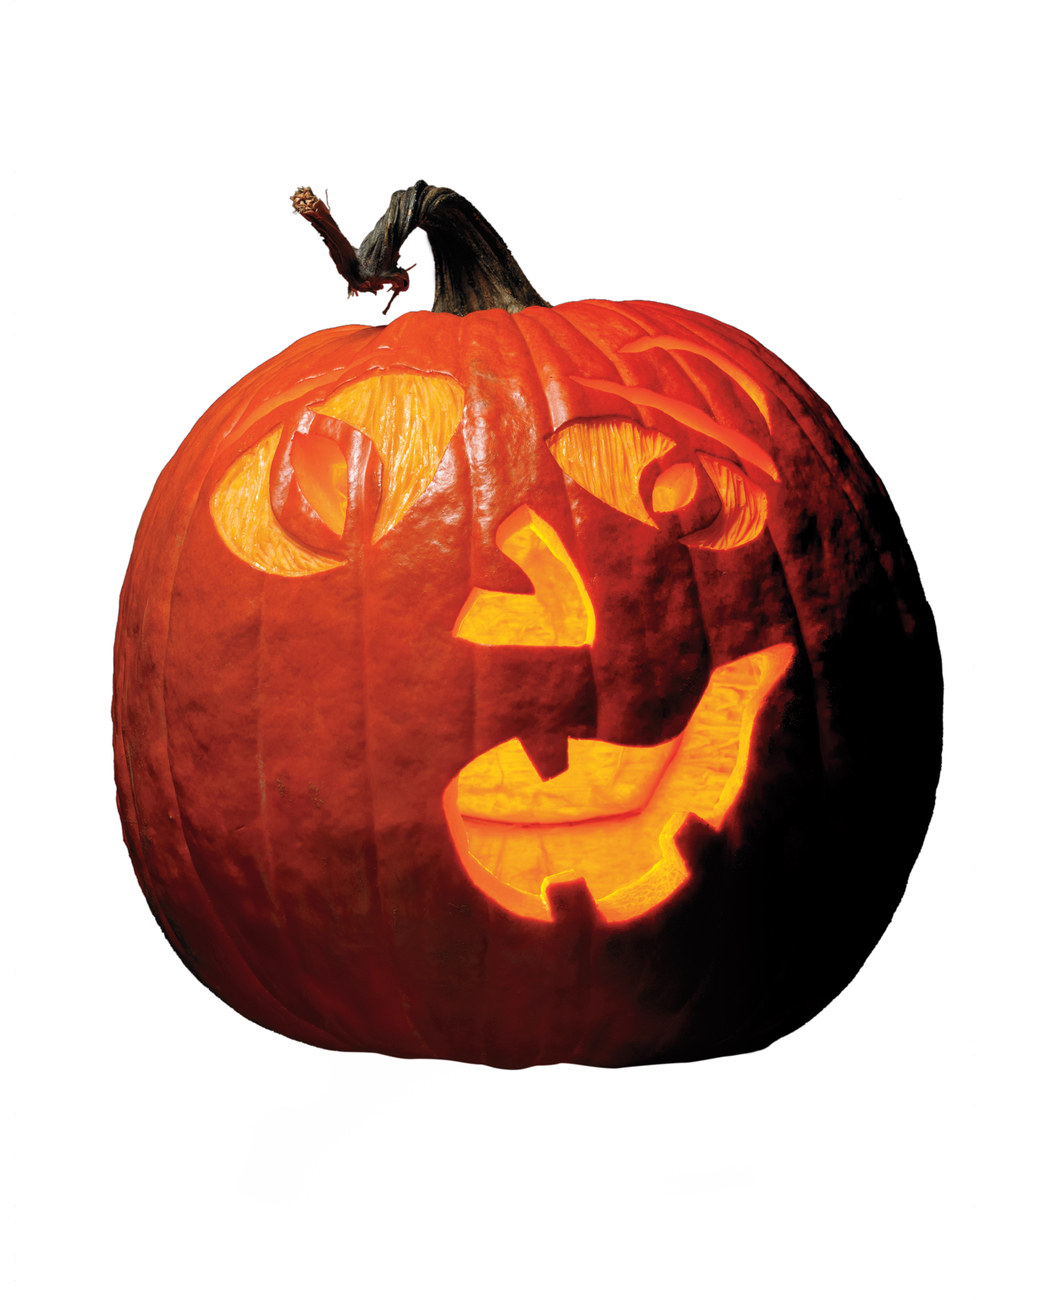 Halloween Pumpkin-Carving Patterns and Pumpkin Templates | Martha ...